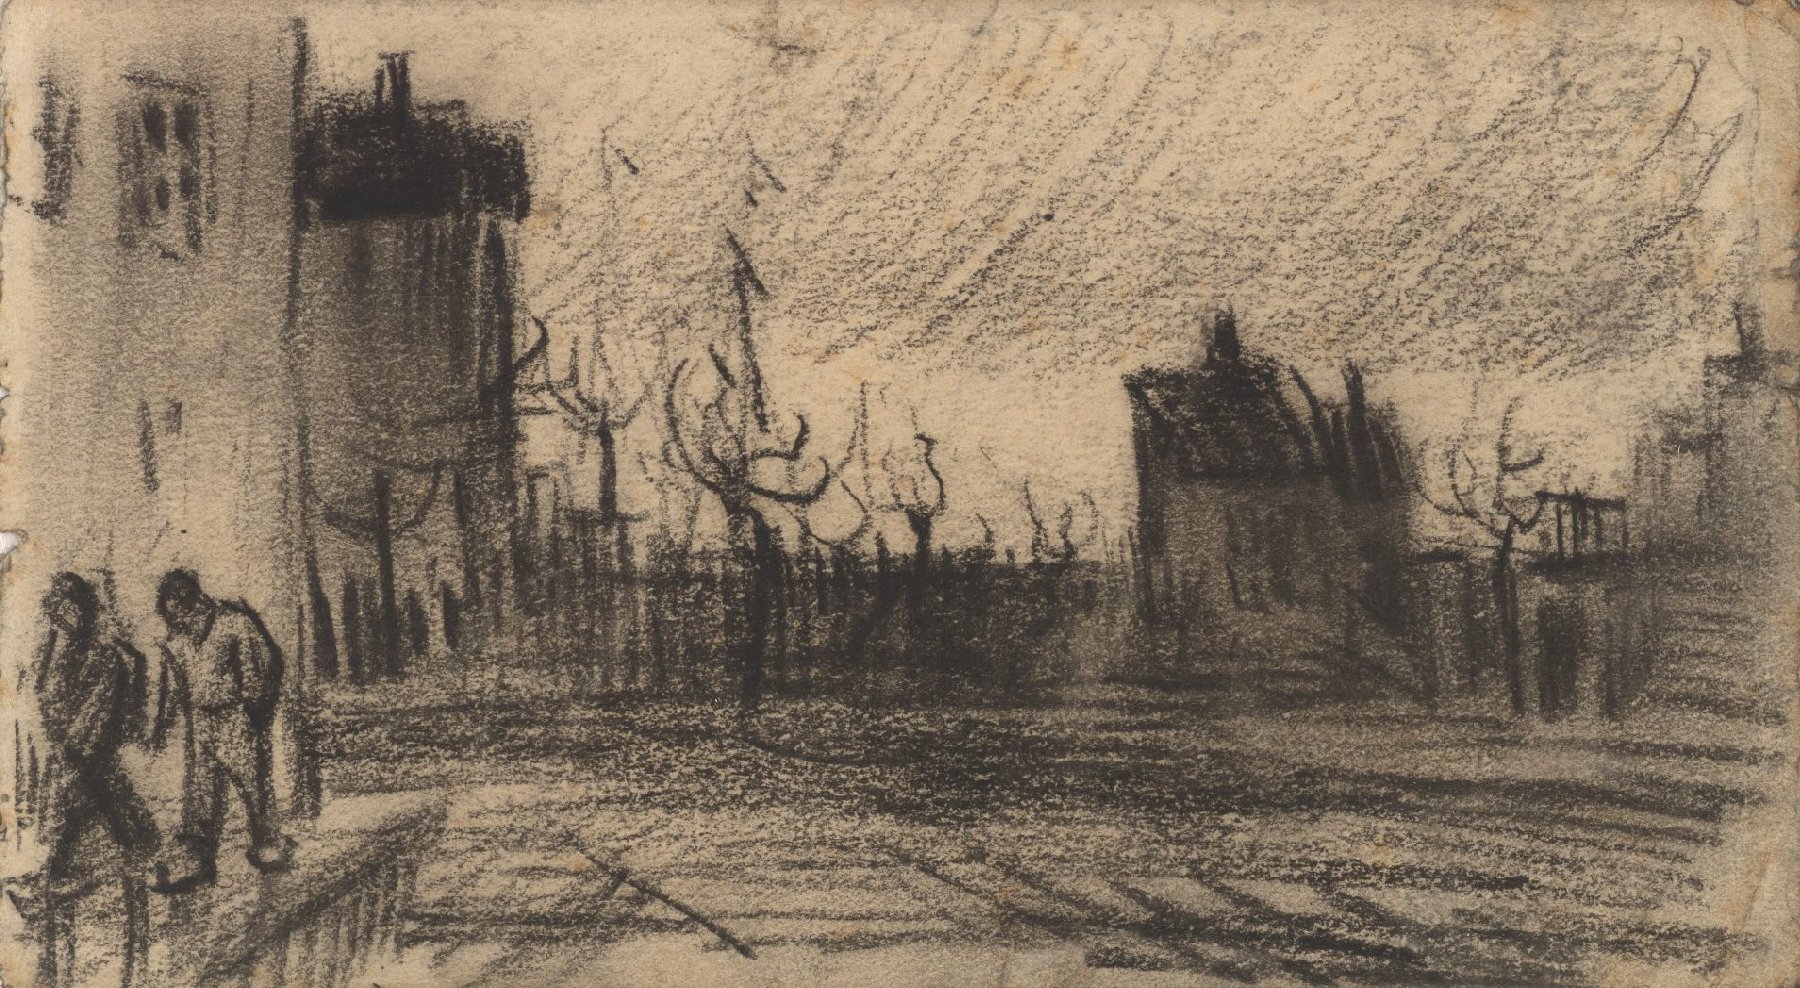 Stadsgezicht Vincent van Gogh (1853 - 1890), Antwerpen, december 1885-januari 1886